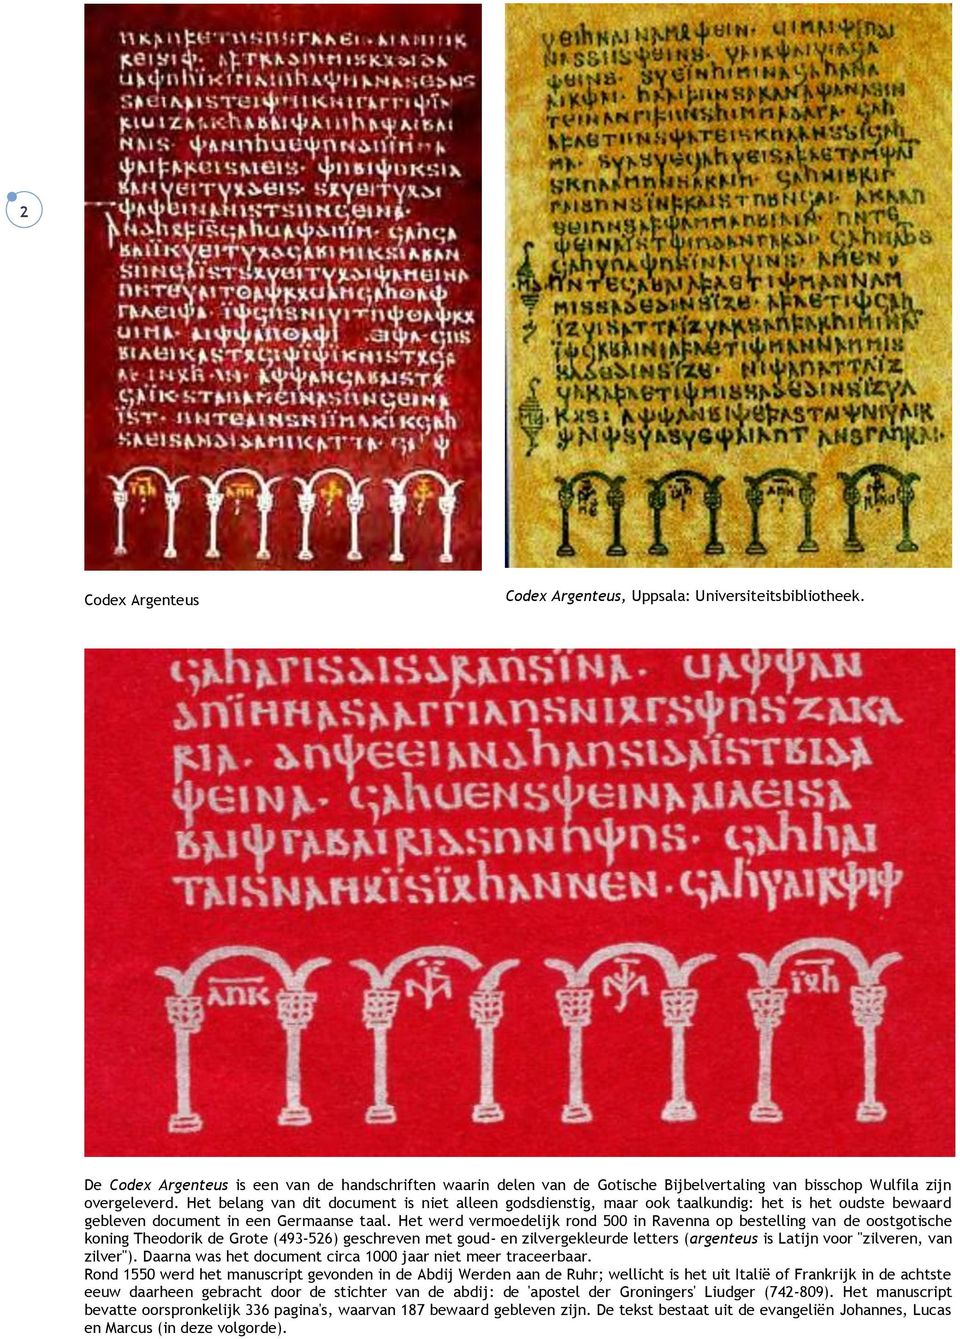 Het belang van dit document is niet alleen godsdienstig, maar ook taalkundig: het is het oudste bewaard gebleven document in een Germaanse taal.